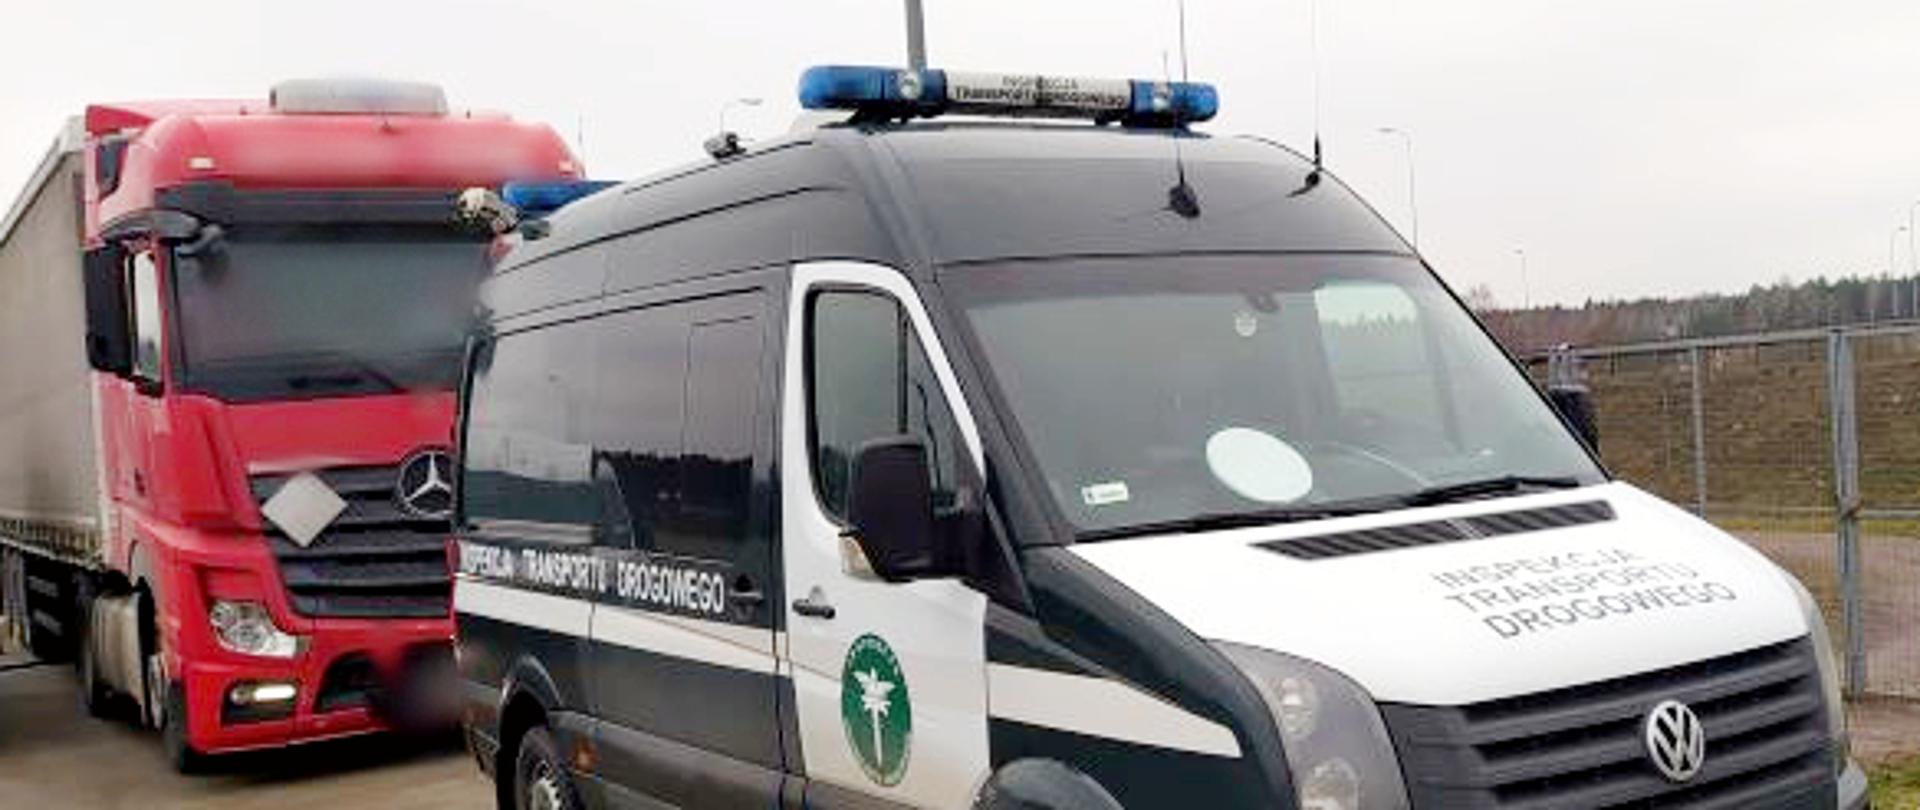 Kontrola rumuńskiej ciężarówki przeprowadzona przez ITD w okolicach Torunia. Na pierwszym planie radiowóz Inspekcji, za nim zatrzymany pojazd.